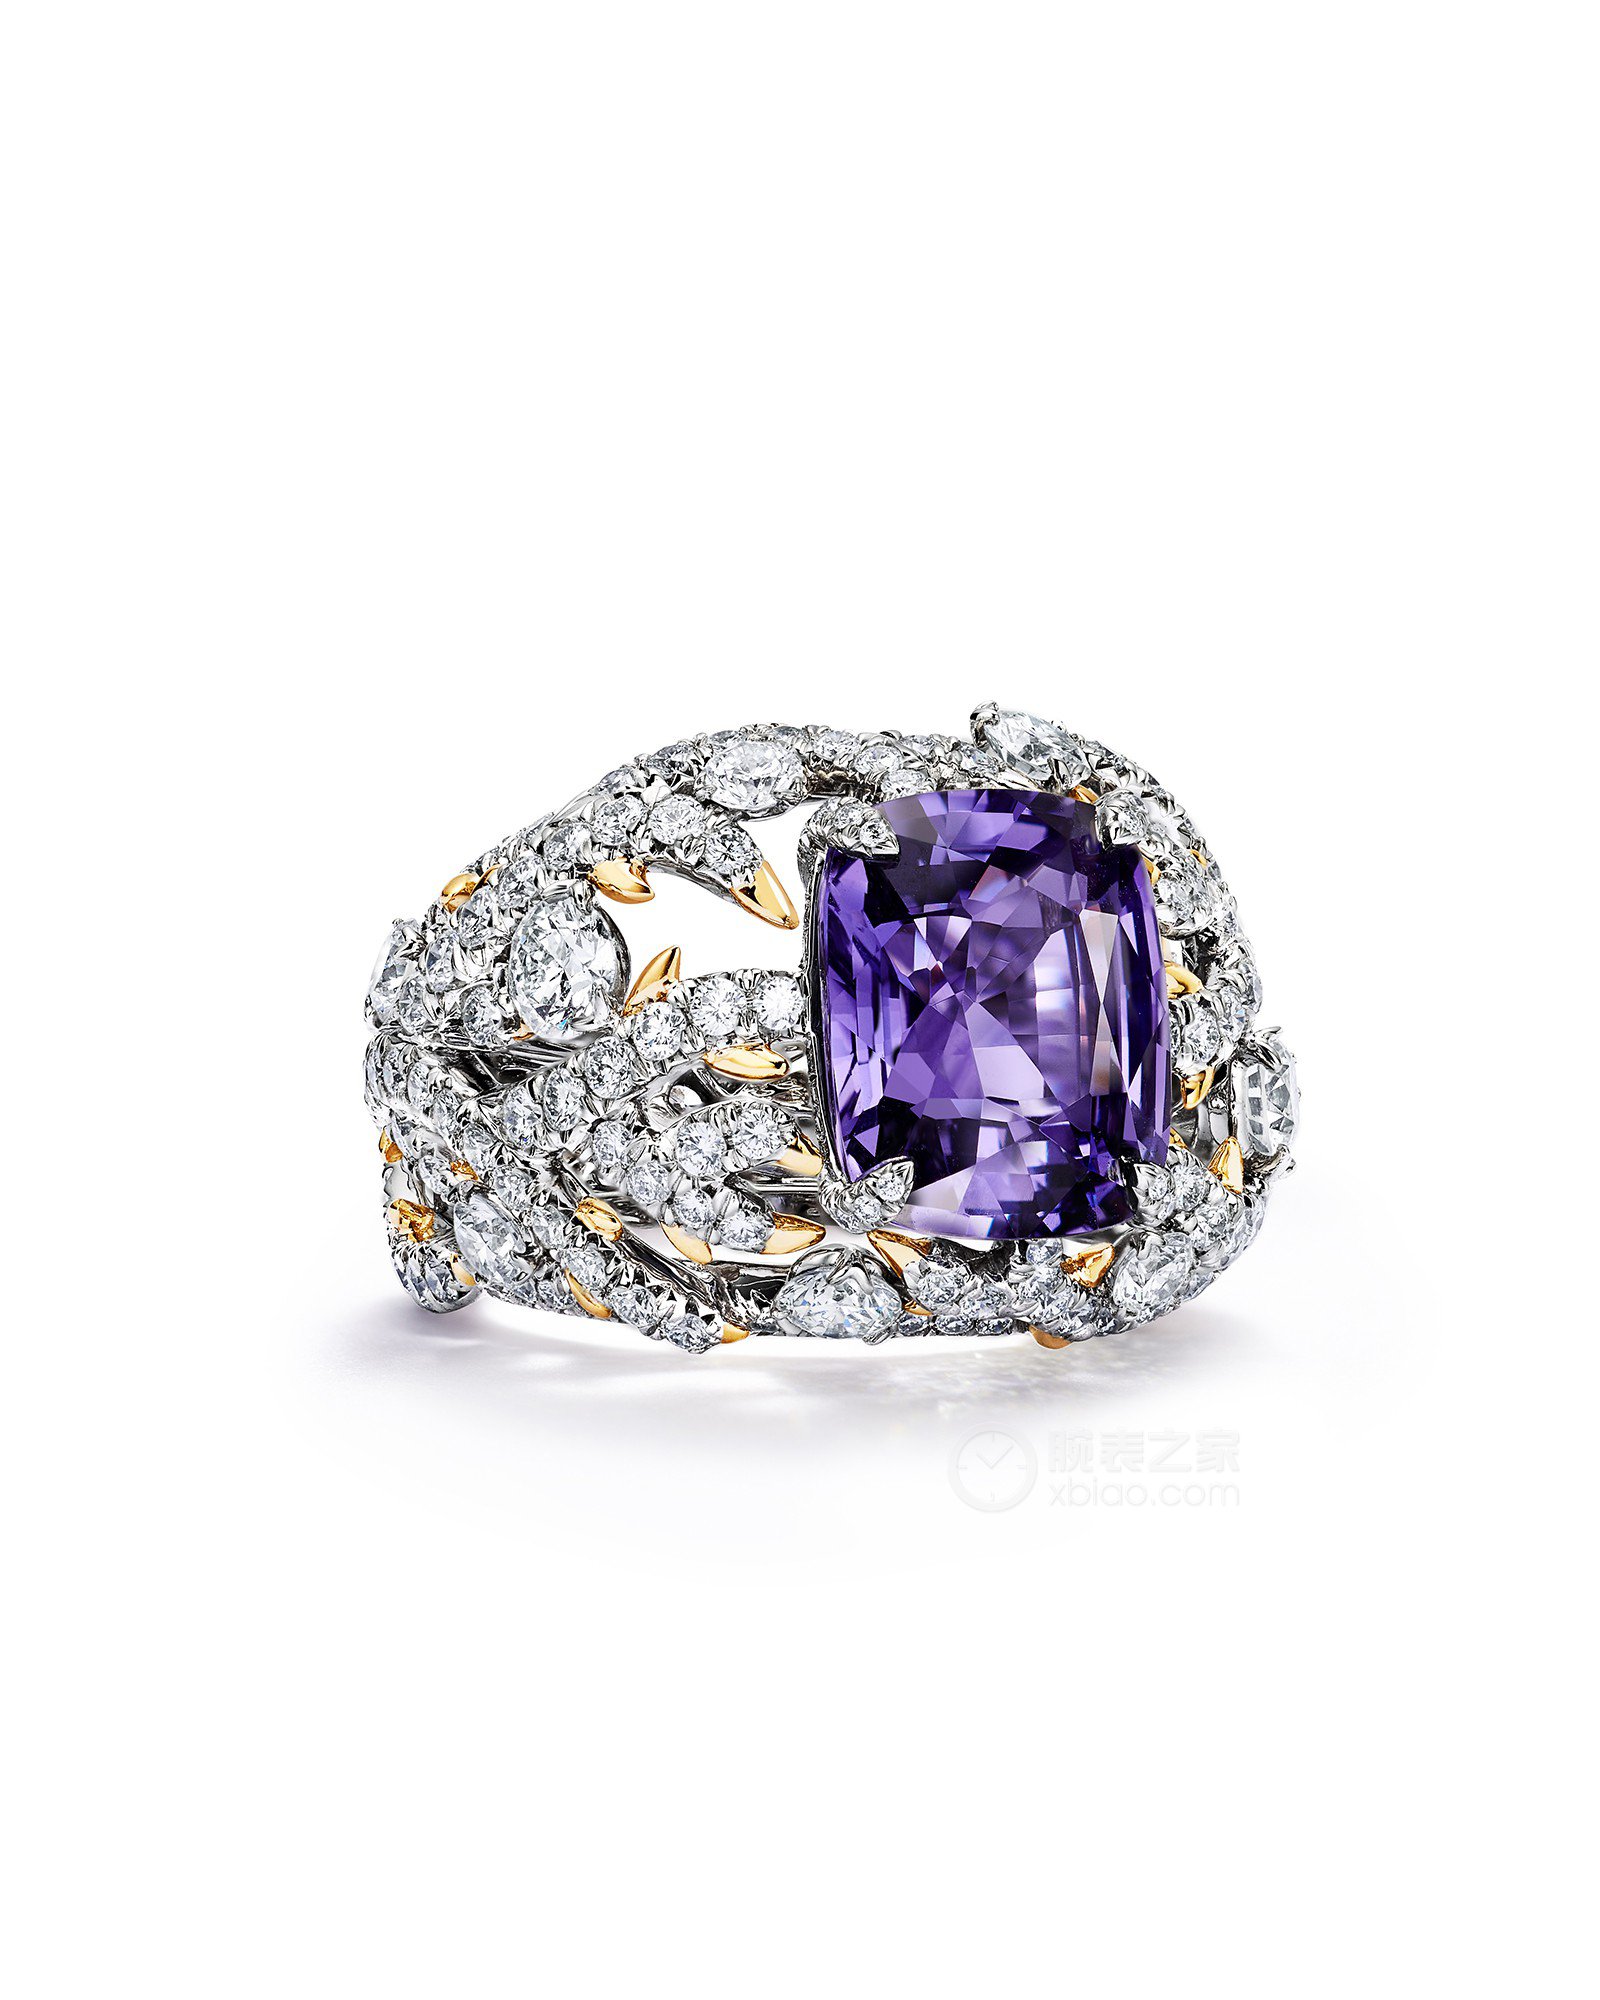 蒂芙尼BLUE BOOK高级珠宝铂金及18K黄金镶嵌一颗重逾6克拉的未经优化处理紫色蓝宝石及钻石戒指戒指